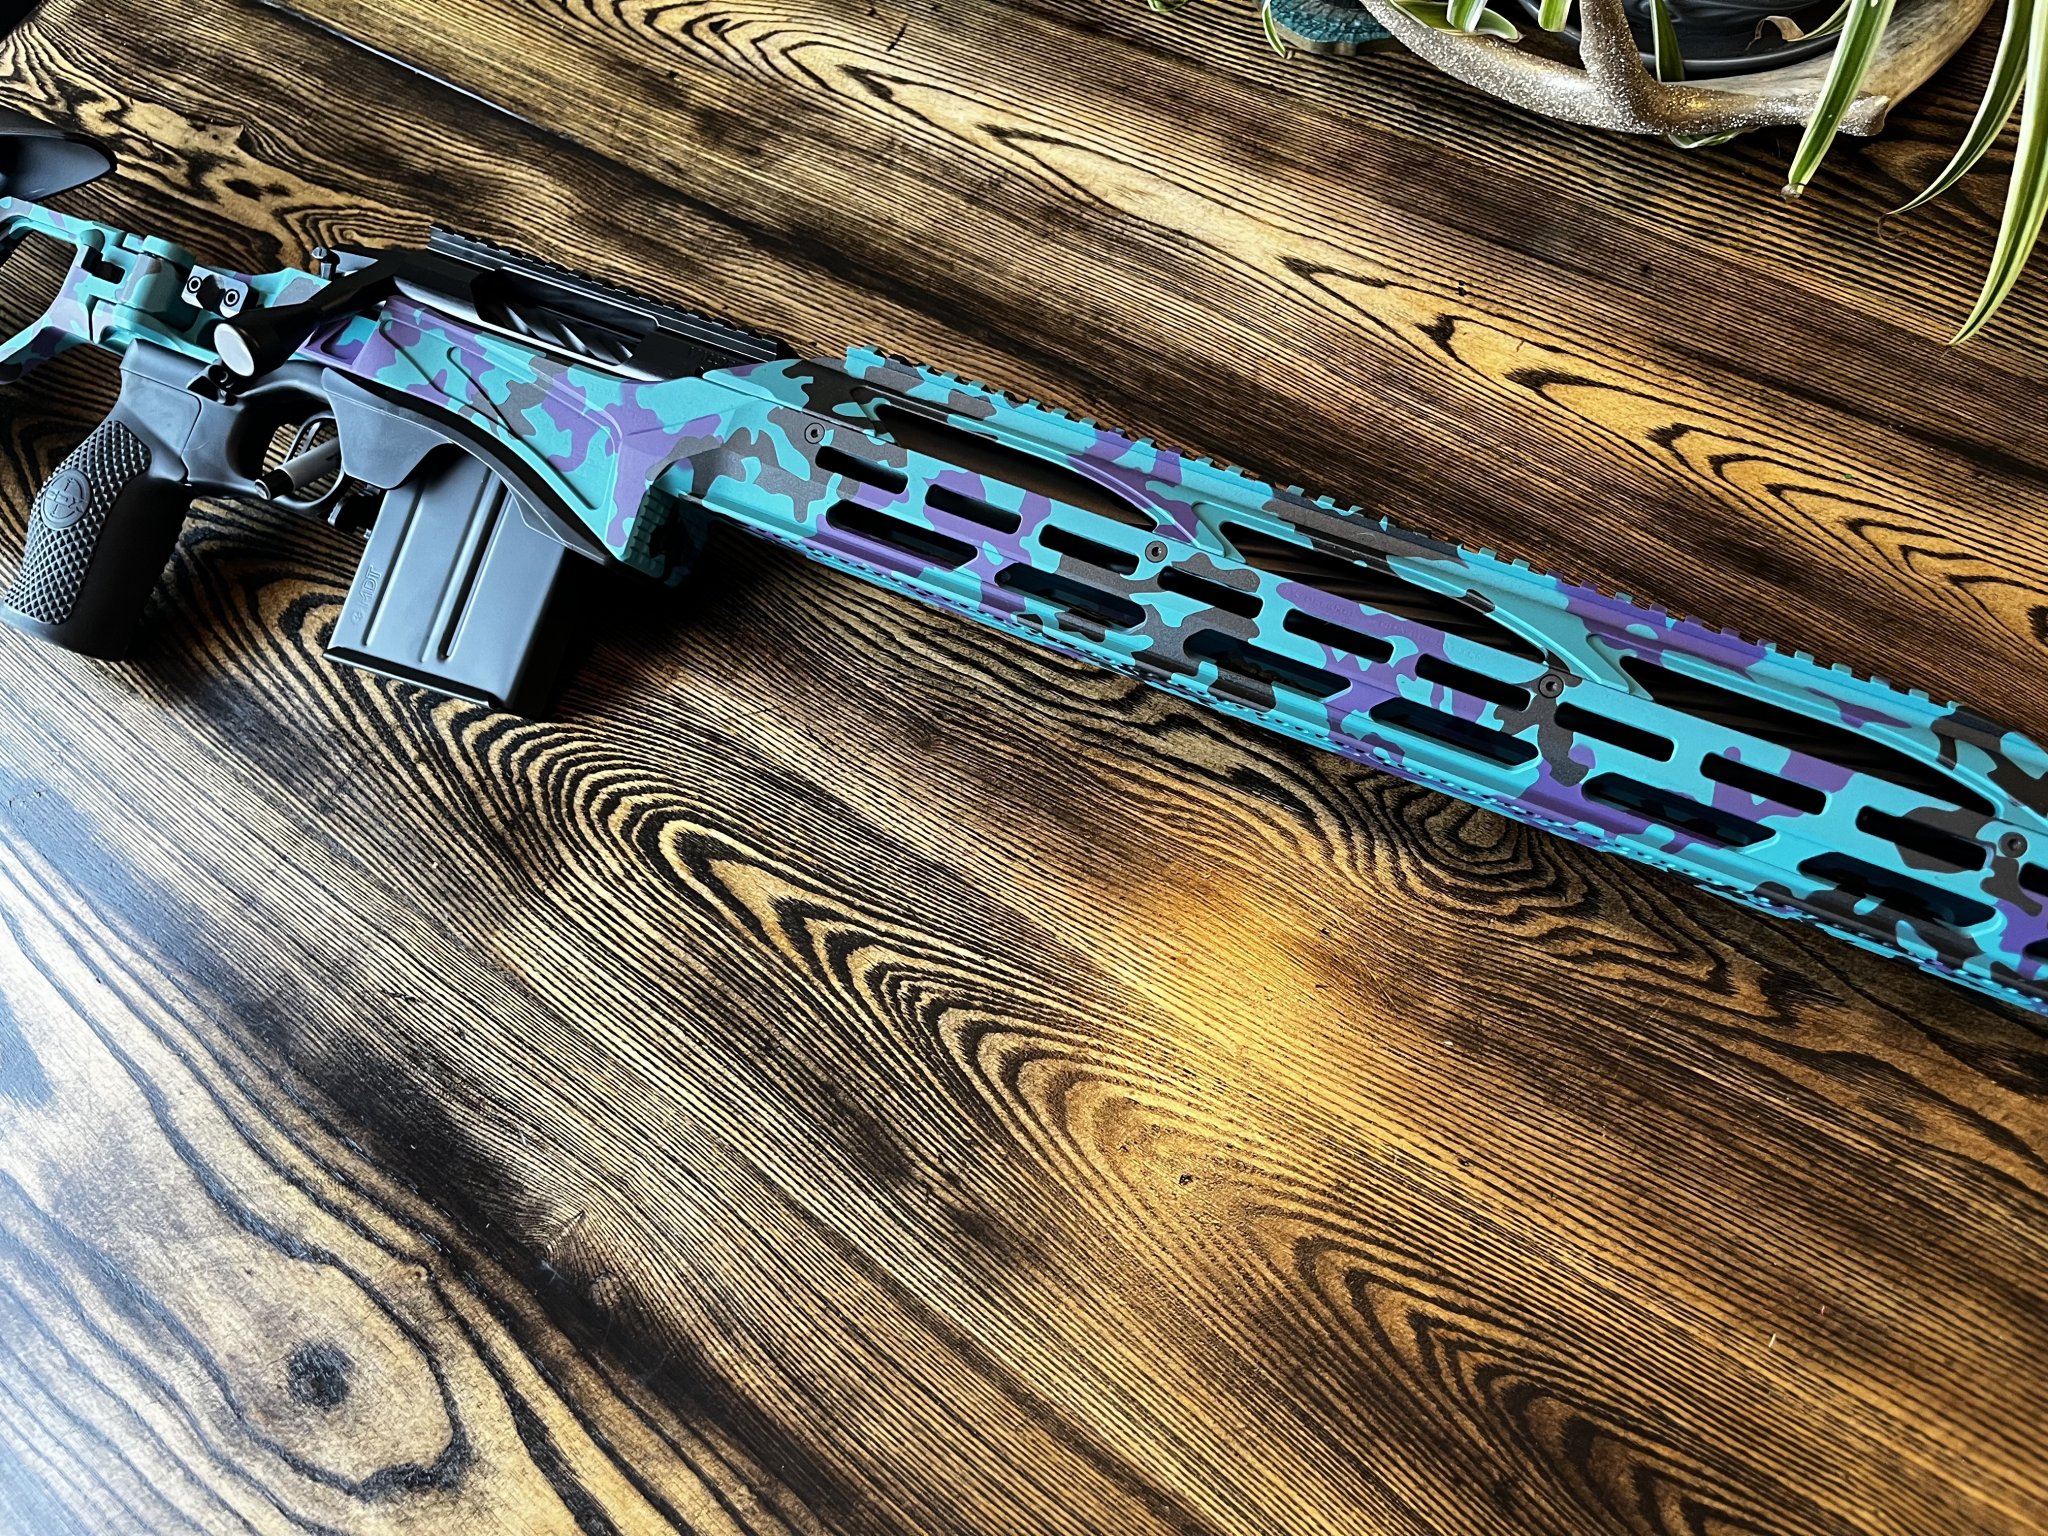 Awesome custom Cerakote paint from EM Precision Rifles!